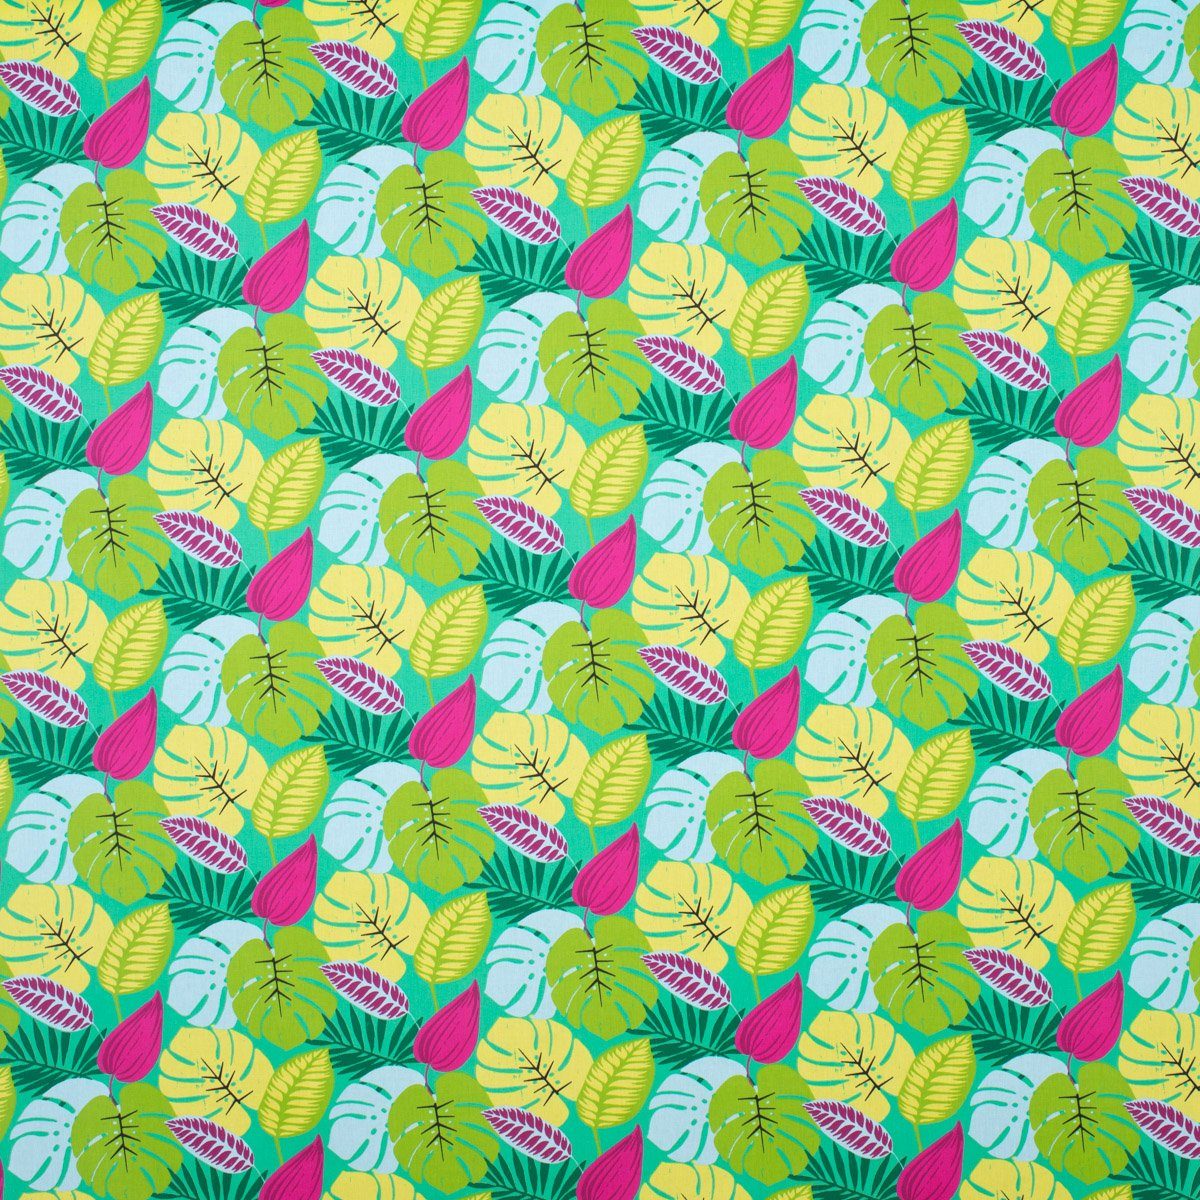 SCHÖNER LEBEN. Stoff Dekostoff Baumwolle Dschungel Palmenblätter grün pink hellblau 1,6m